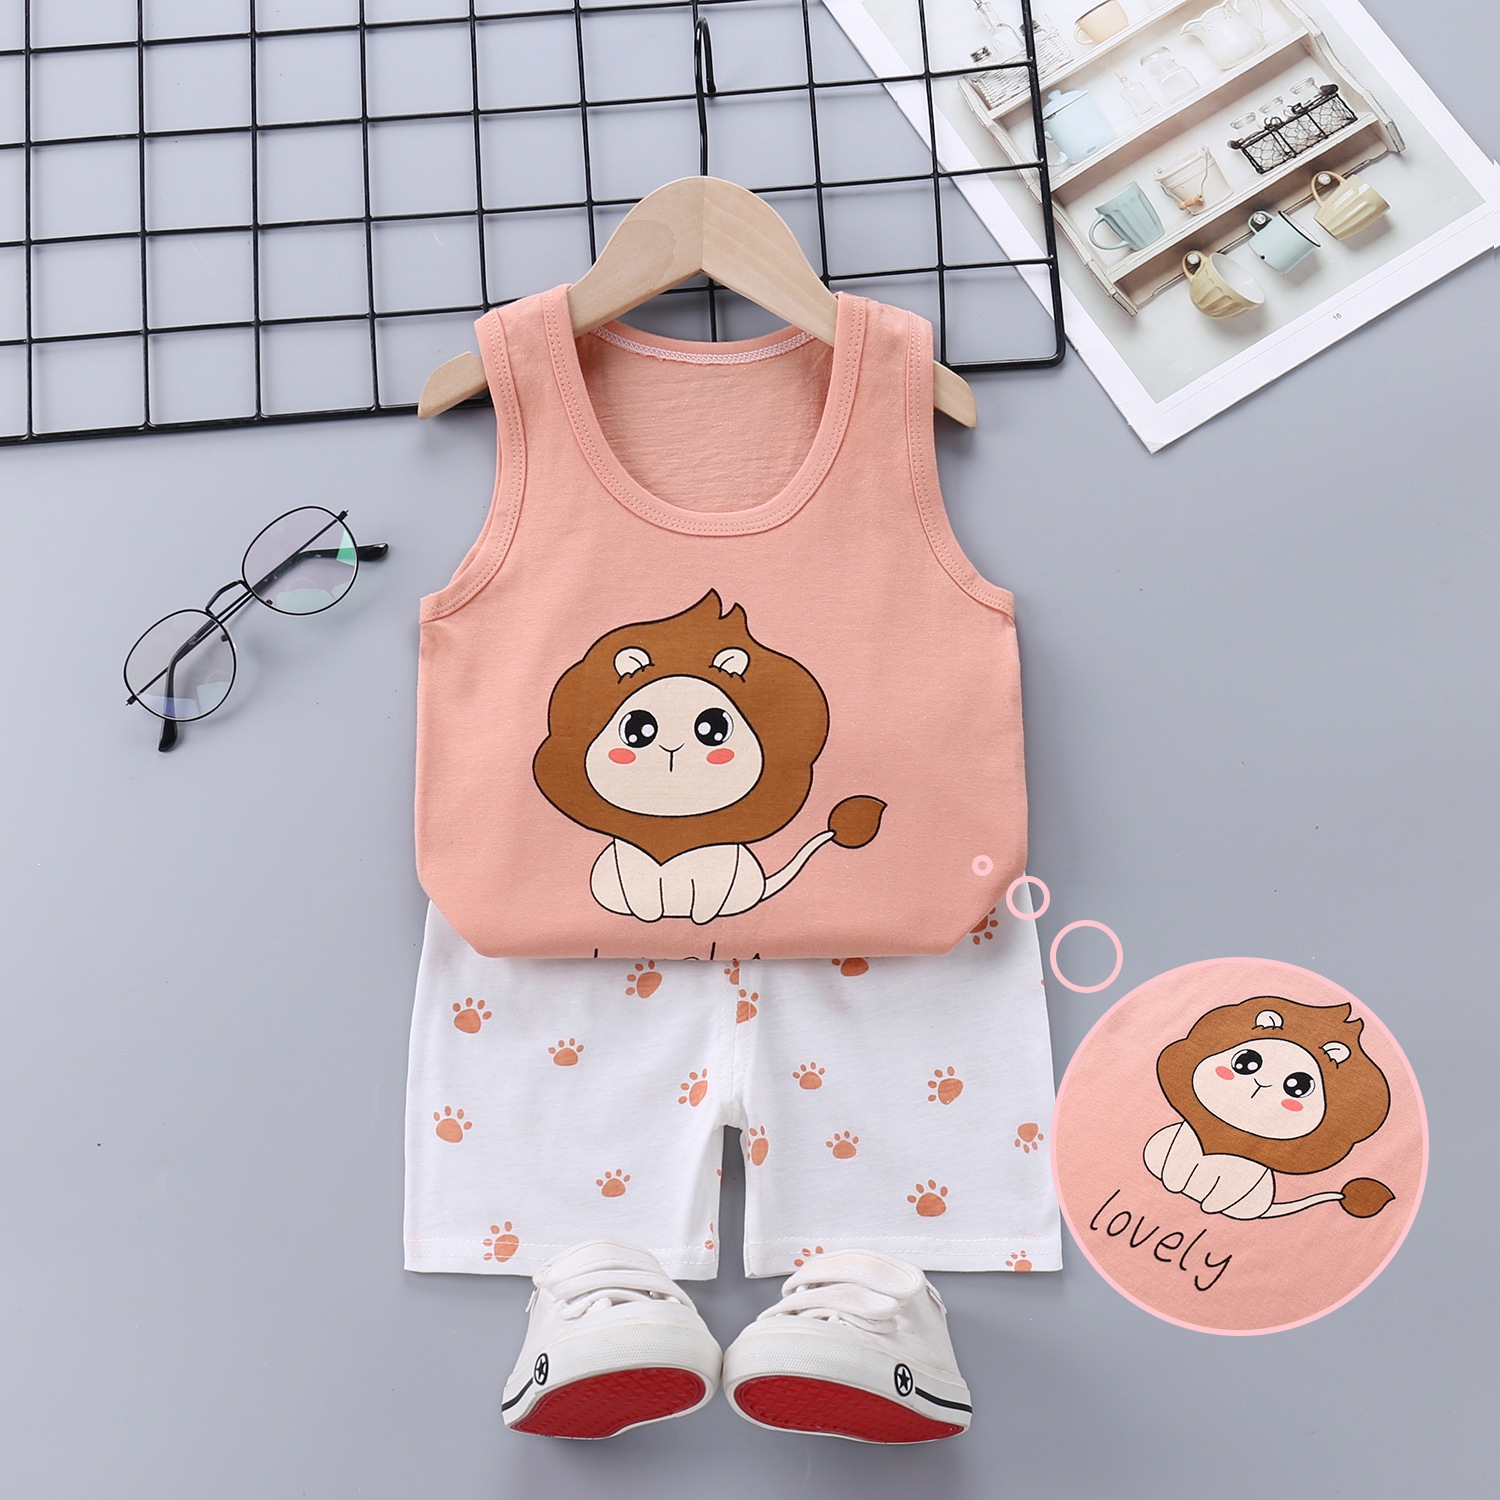 Bộ quần áo cho bé gái Easy Baby từ 7-16kg, đồ bộ cho bé chất vải cotton thoáng mát (SG-407)